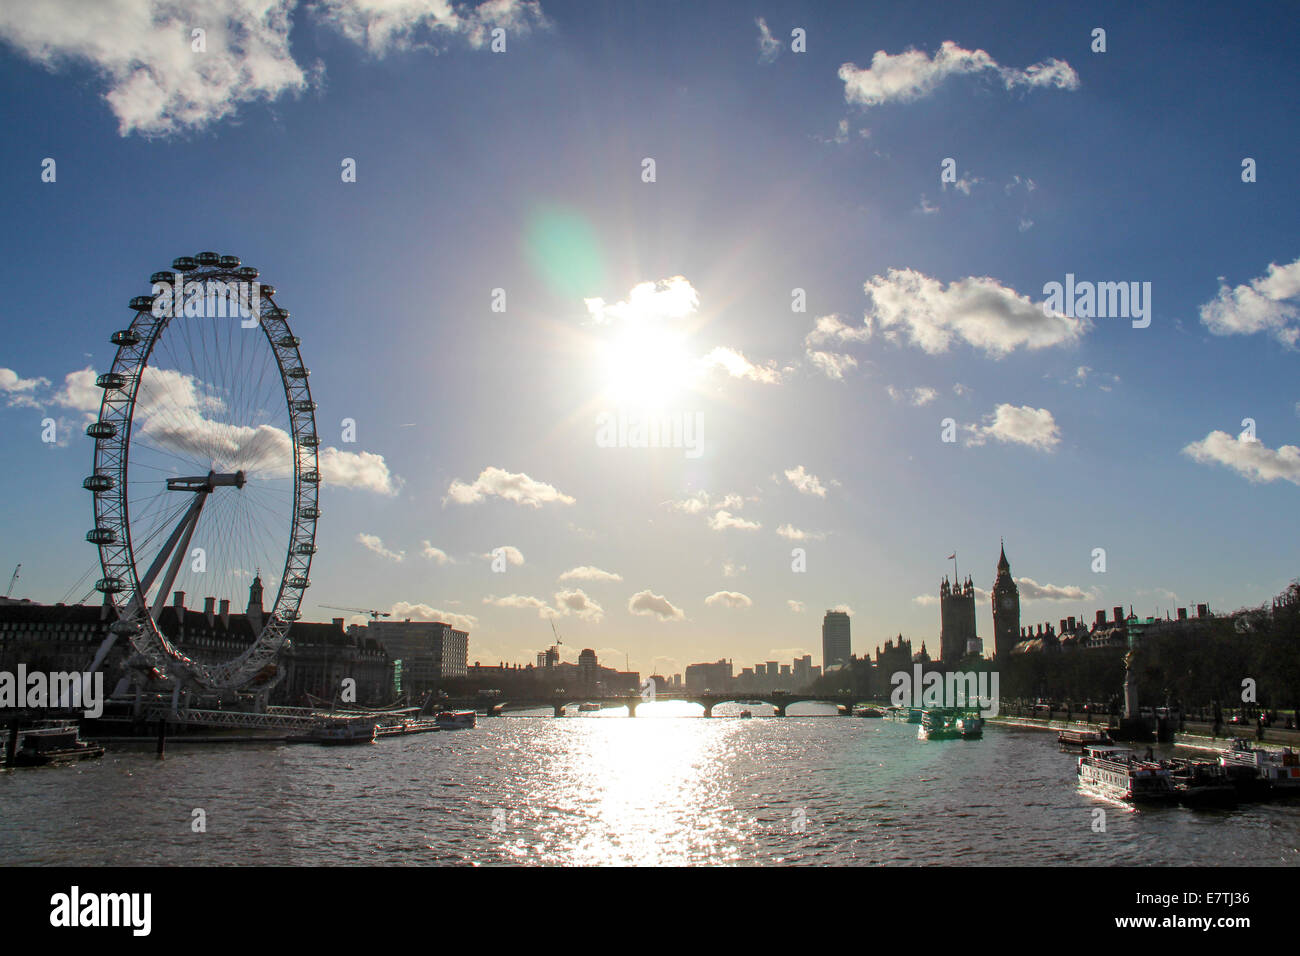 Angleterre : London Eye, le Palais de Westminster et Big Ben (de gauche à droite). Photo de 11. Janvier 2014. Banque D'Images